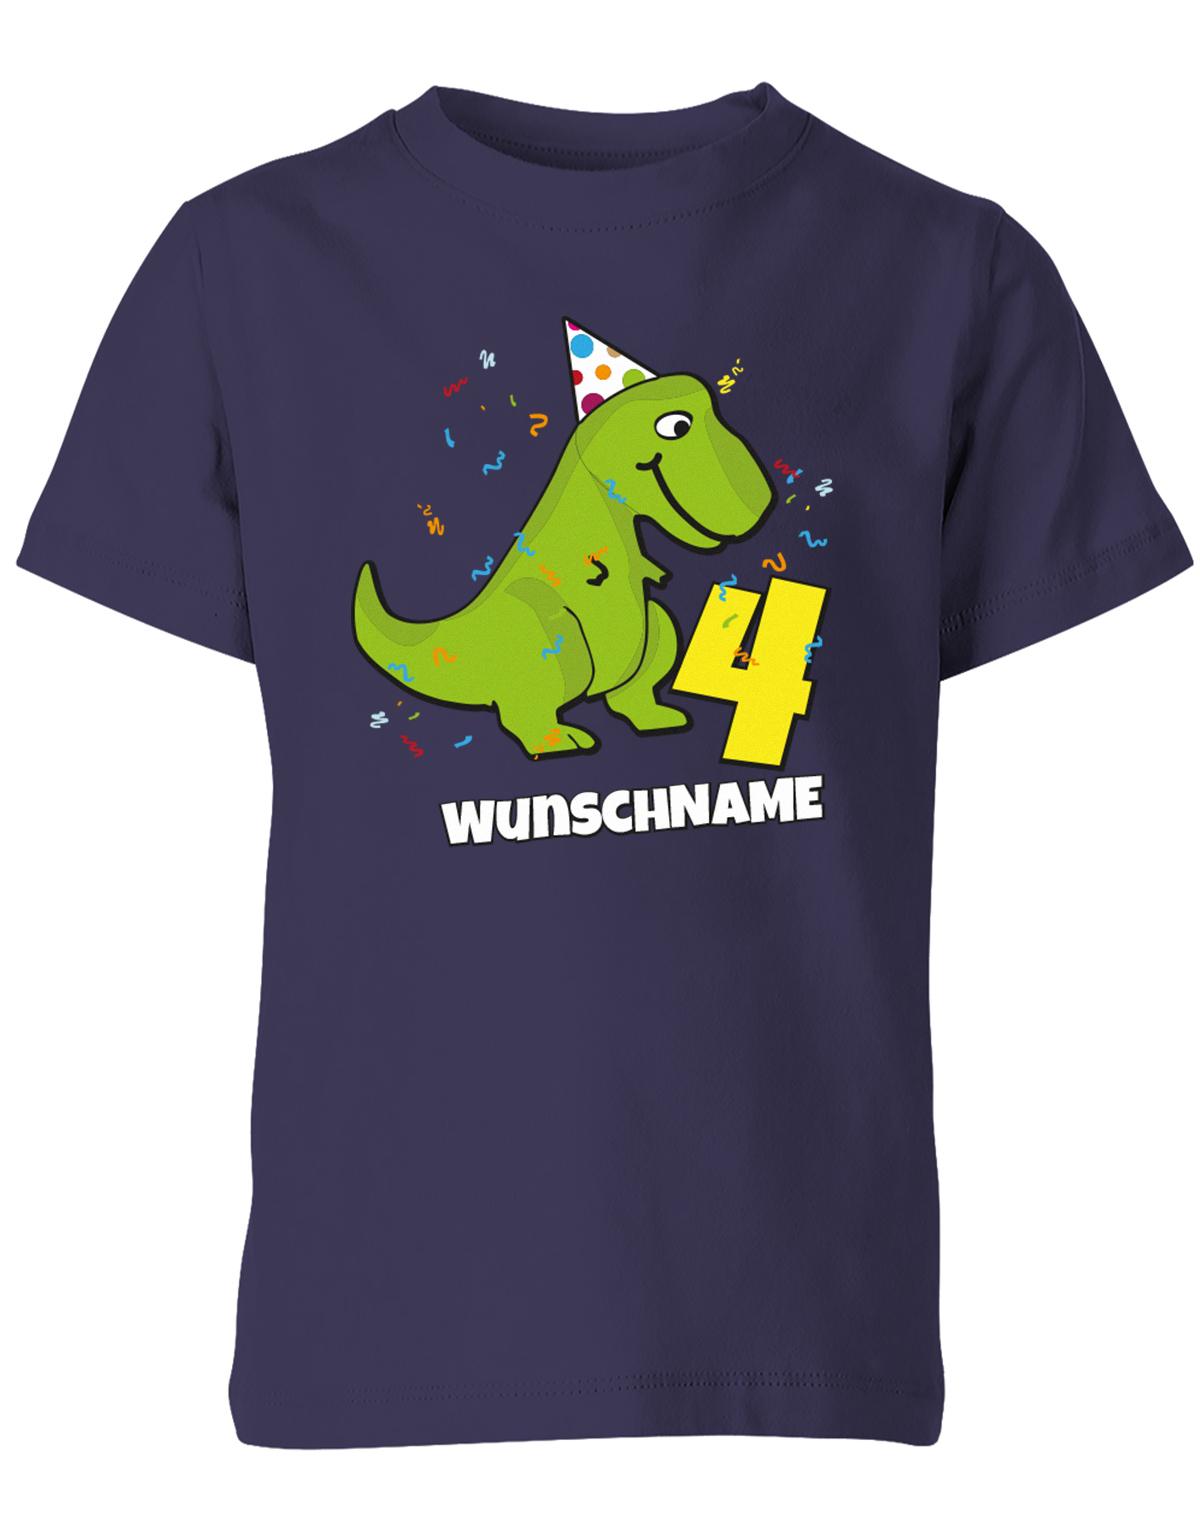 ich-bin-4-Dinosaurier-t-rex-wunschname-geburtstag-kinder-shirt-navy